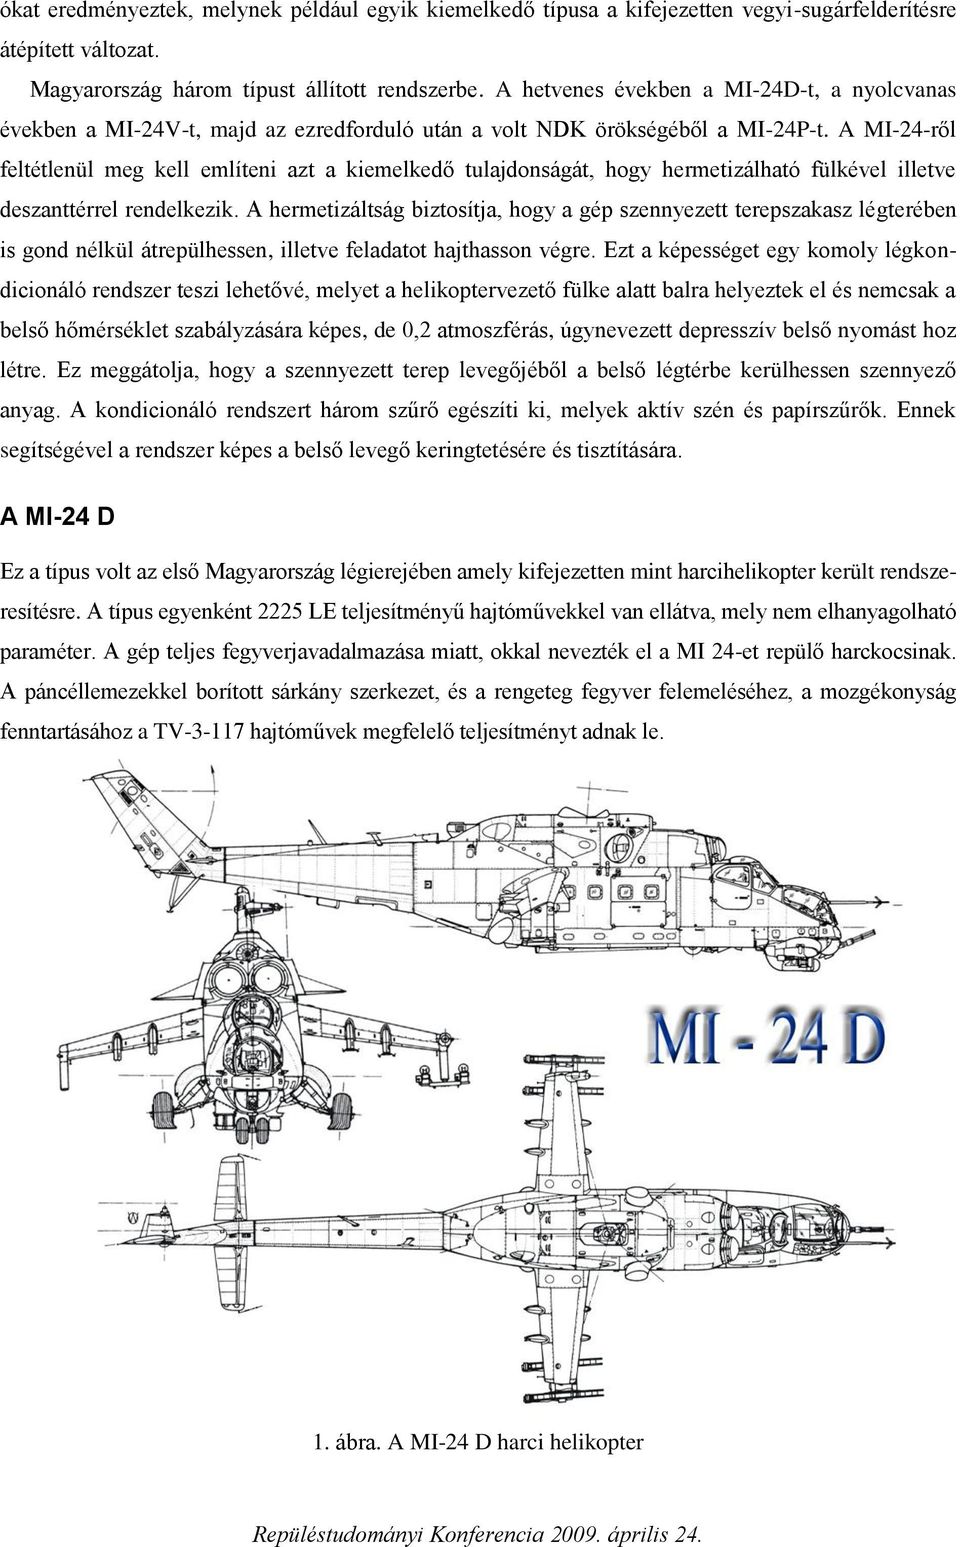 A MI-24-ről feltétlenül meg kell említeni azt a kiemelkedő tulajdonságát, hogy hermetizálható fülkével illetve deszanttérrel rendelkezik.